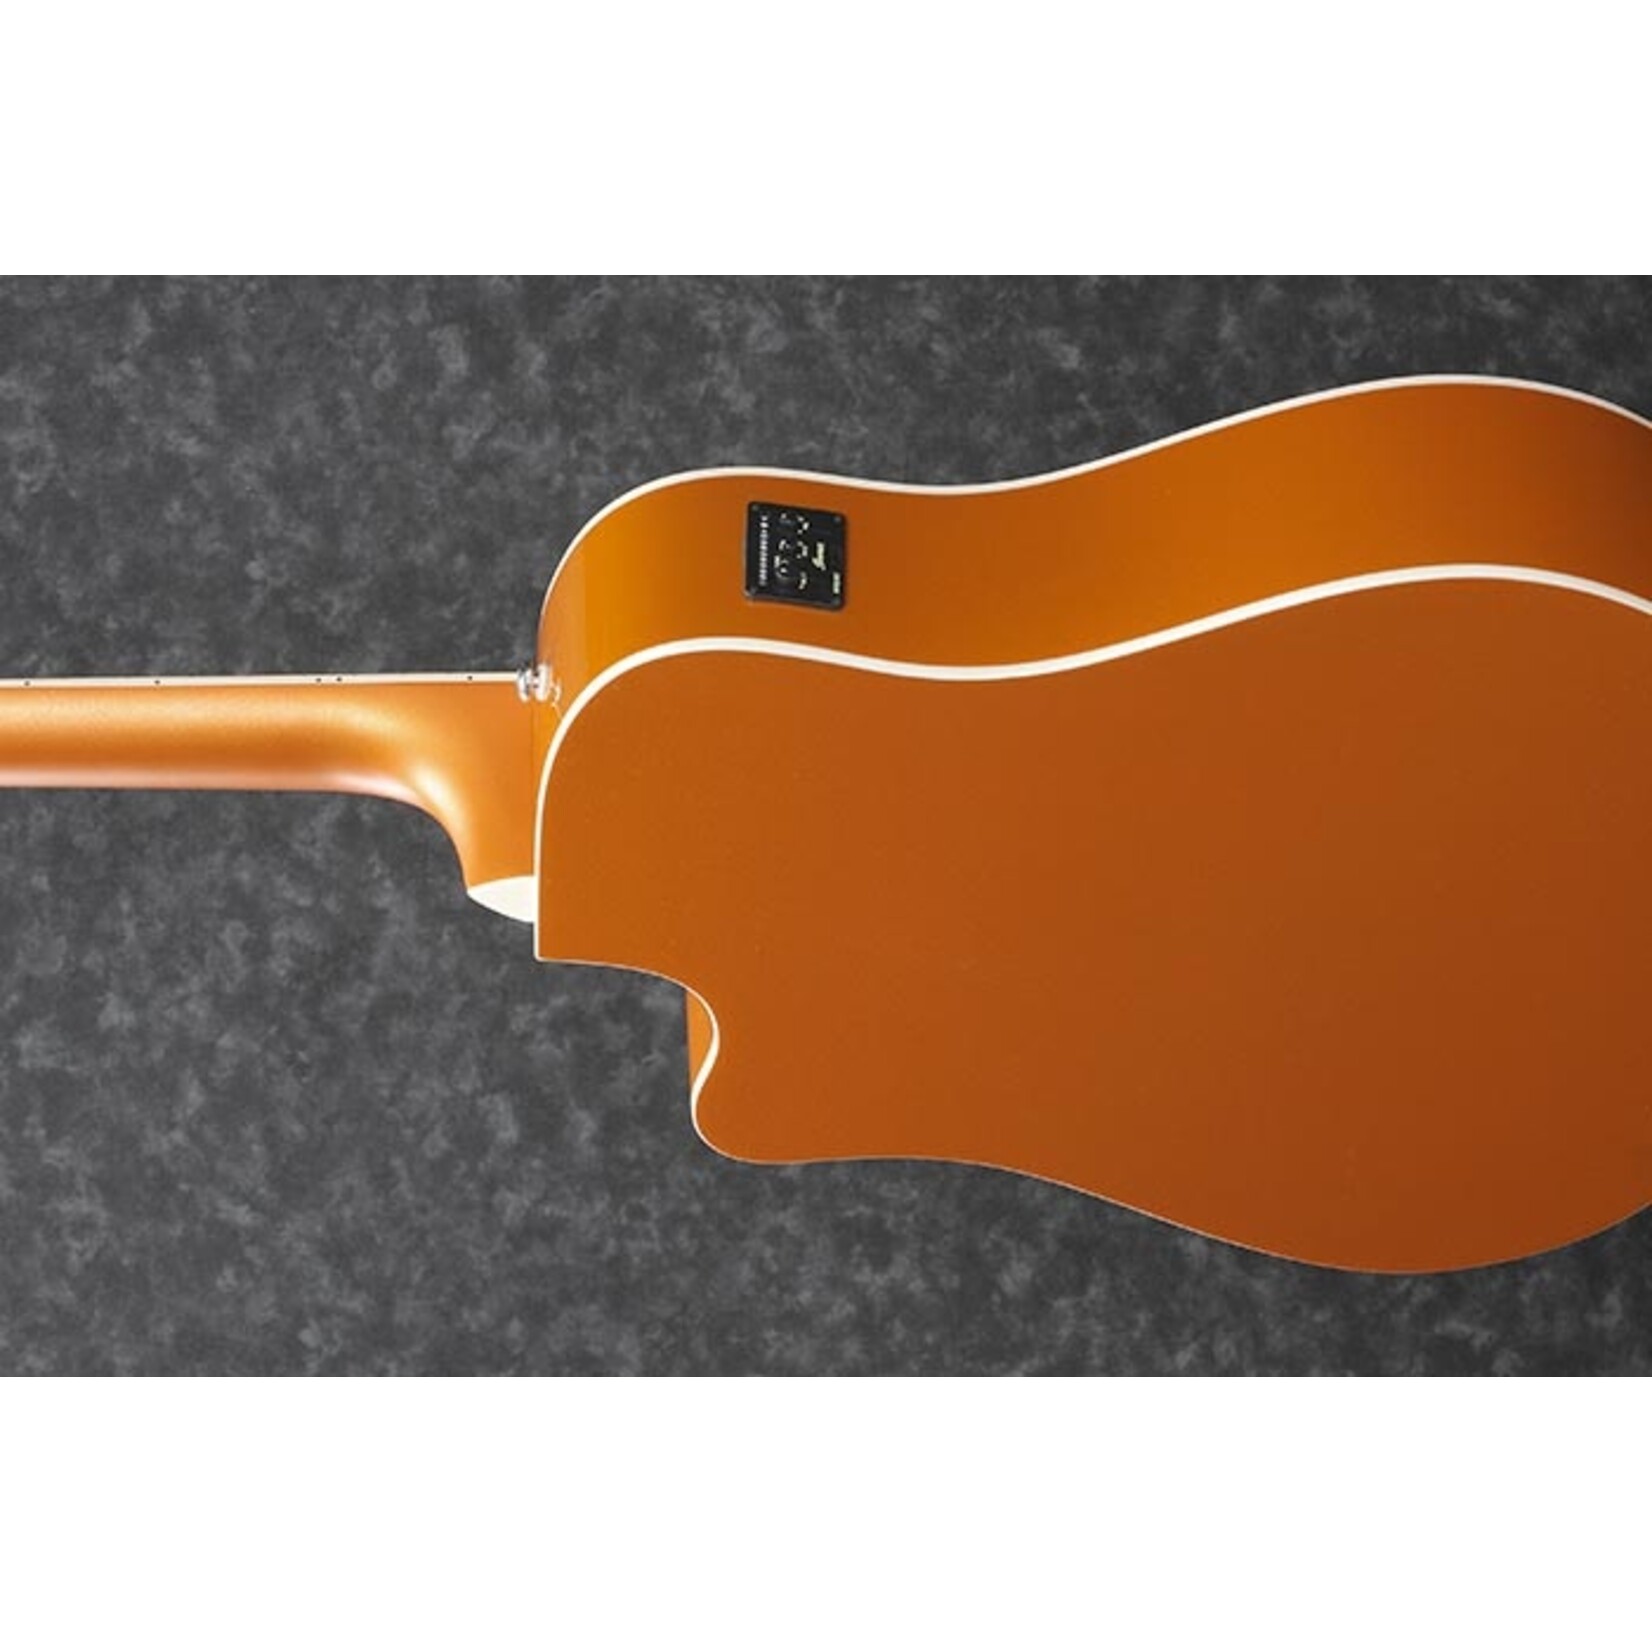 Ibanez Altstar ALT30 Acoustic-Electric Guitar - Dark Orange Metallic